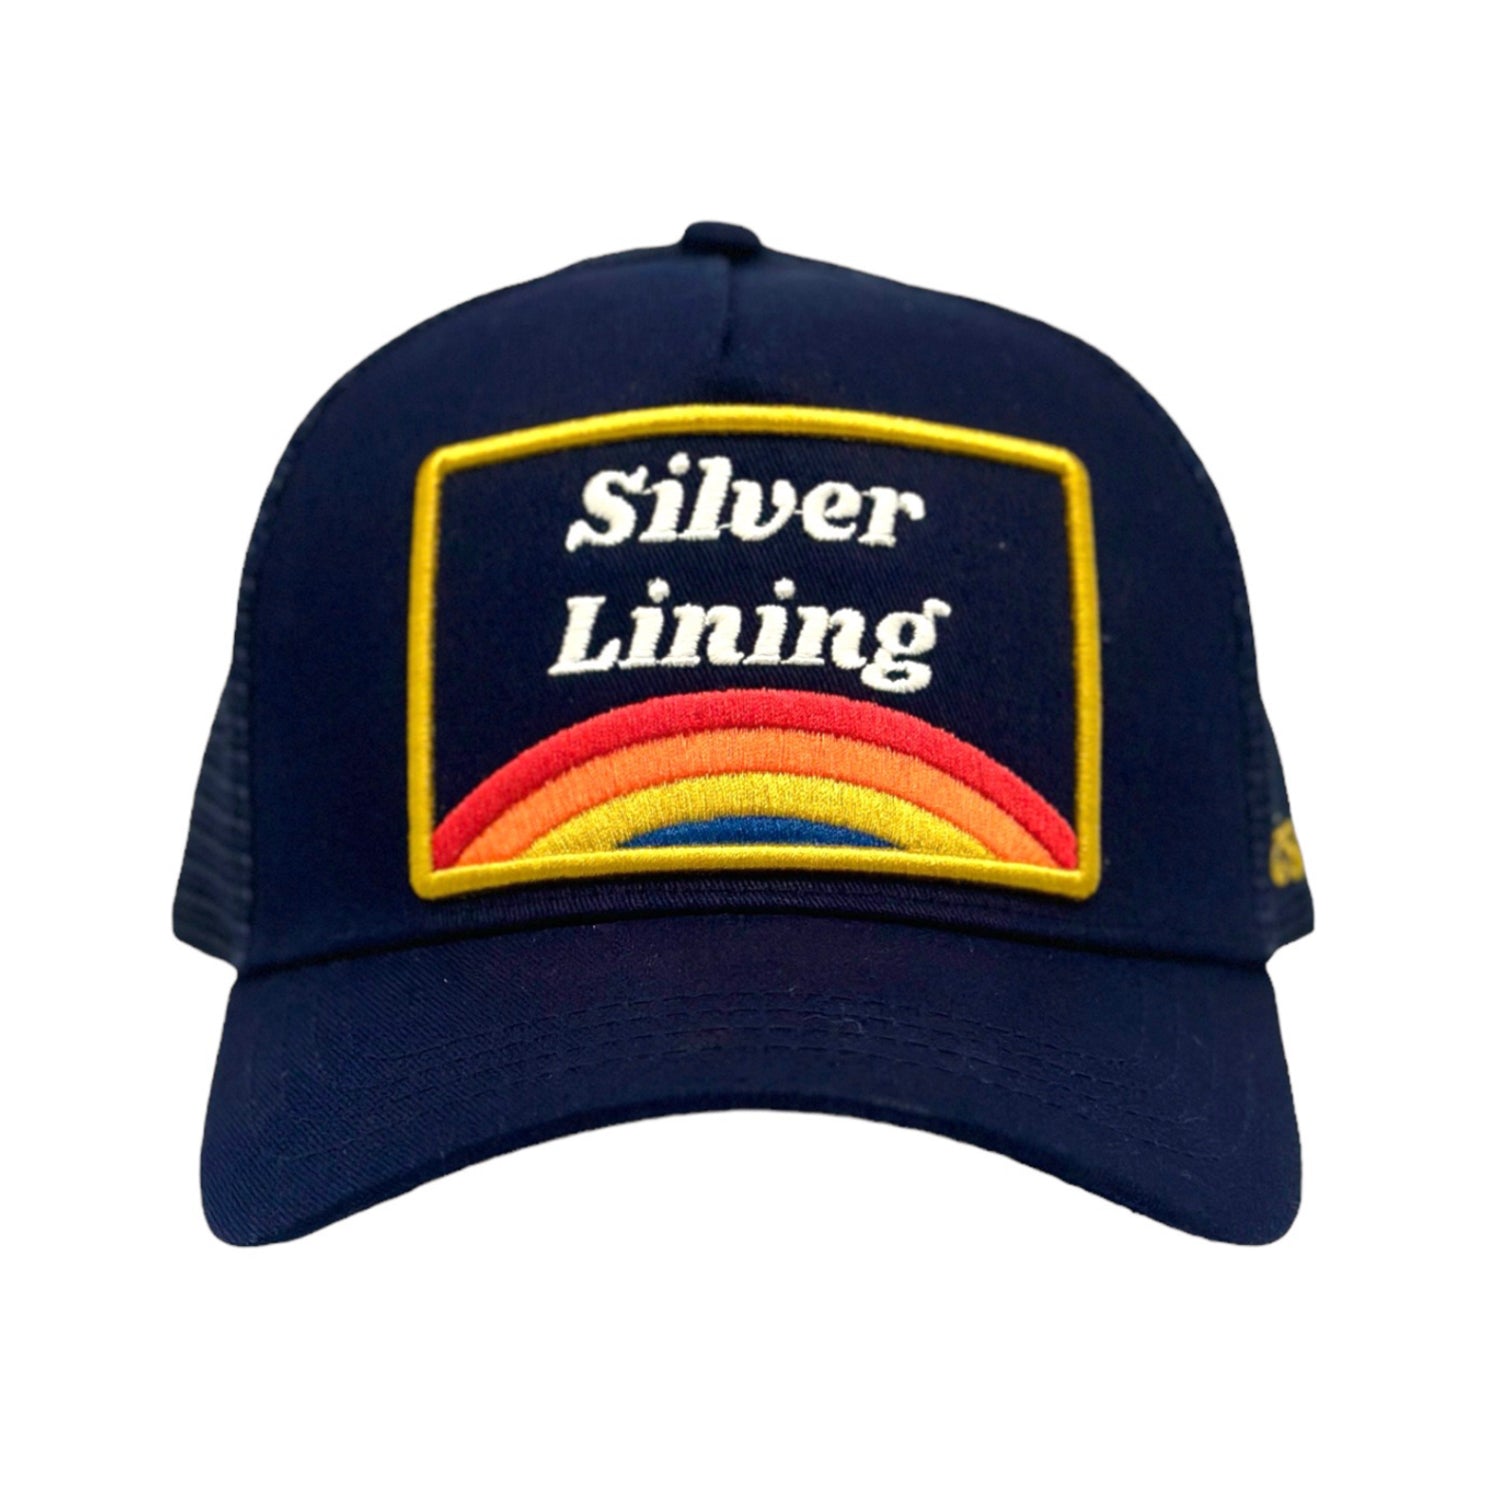 Silver Lining Trucker - Indigo